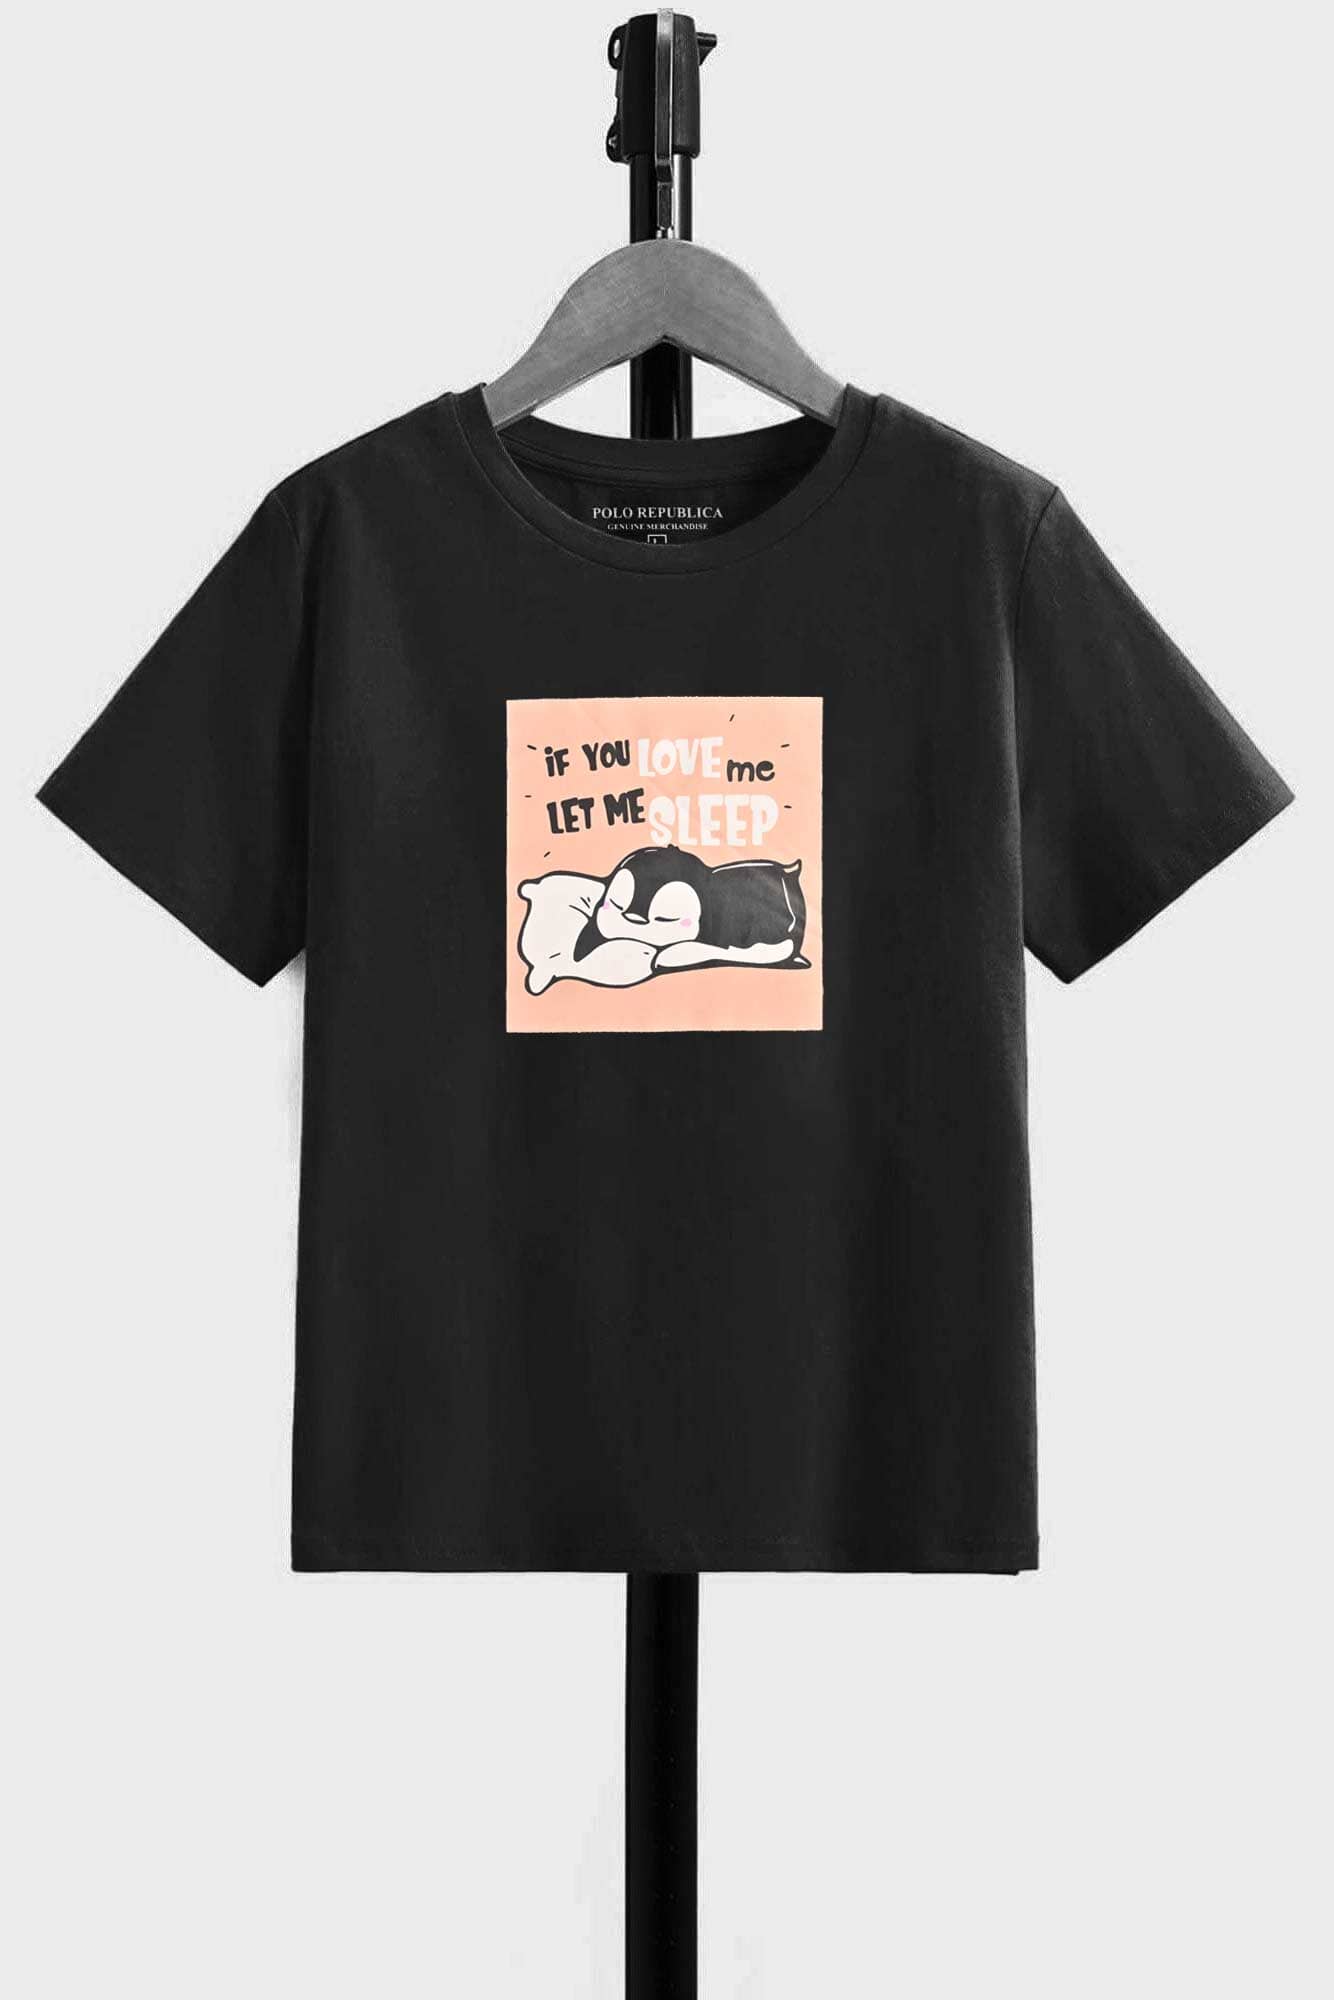 Polo Republica Boy's Let Me Sleep Printed Tee Shirt Boy's Tee Shirt Polo Republica 